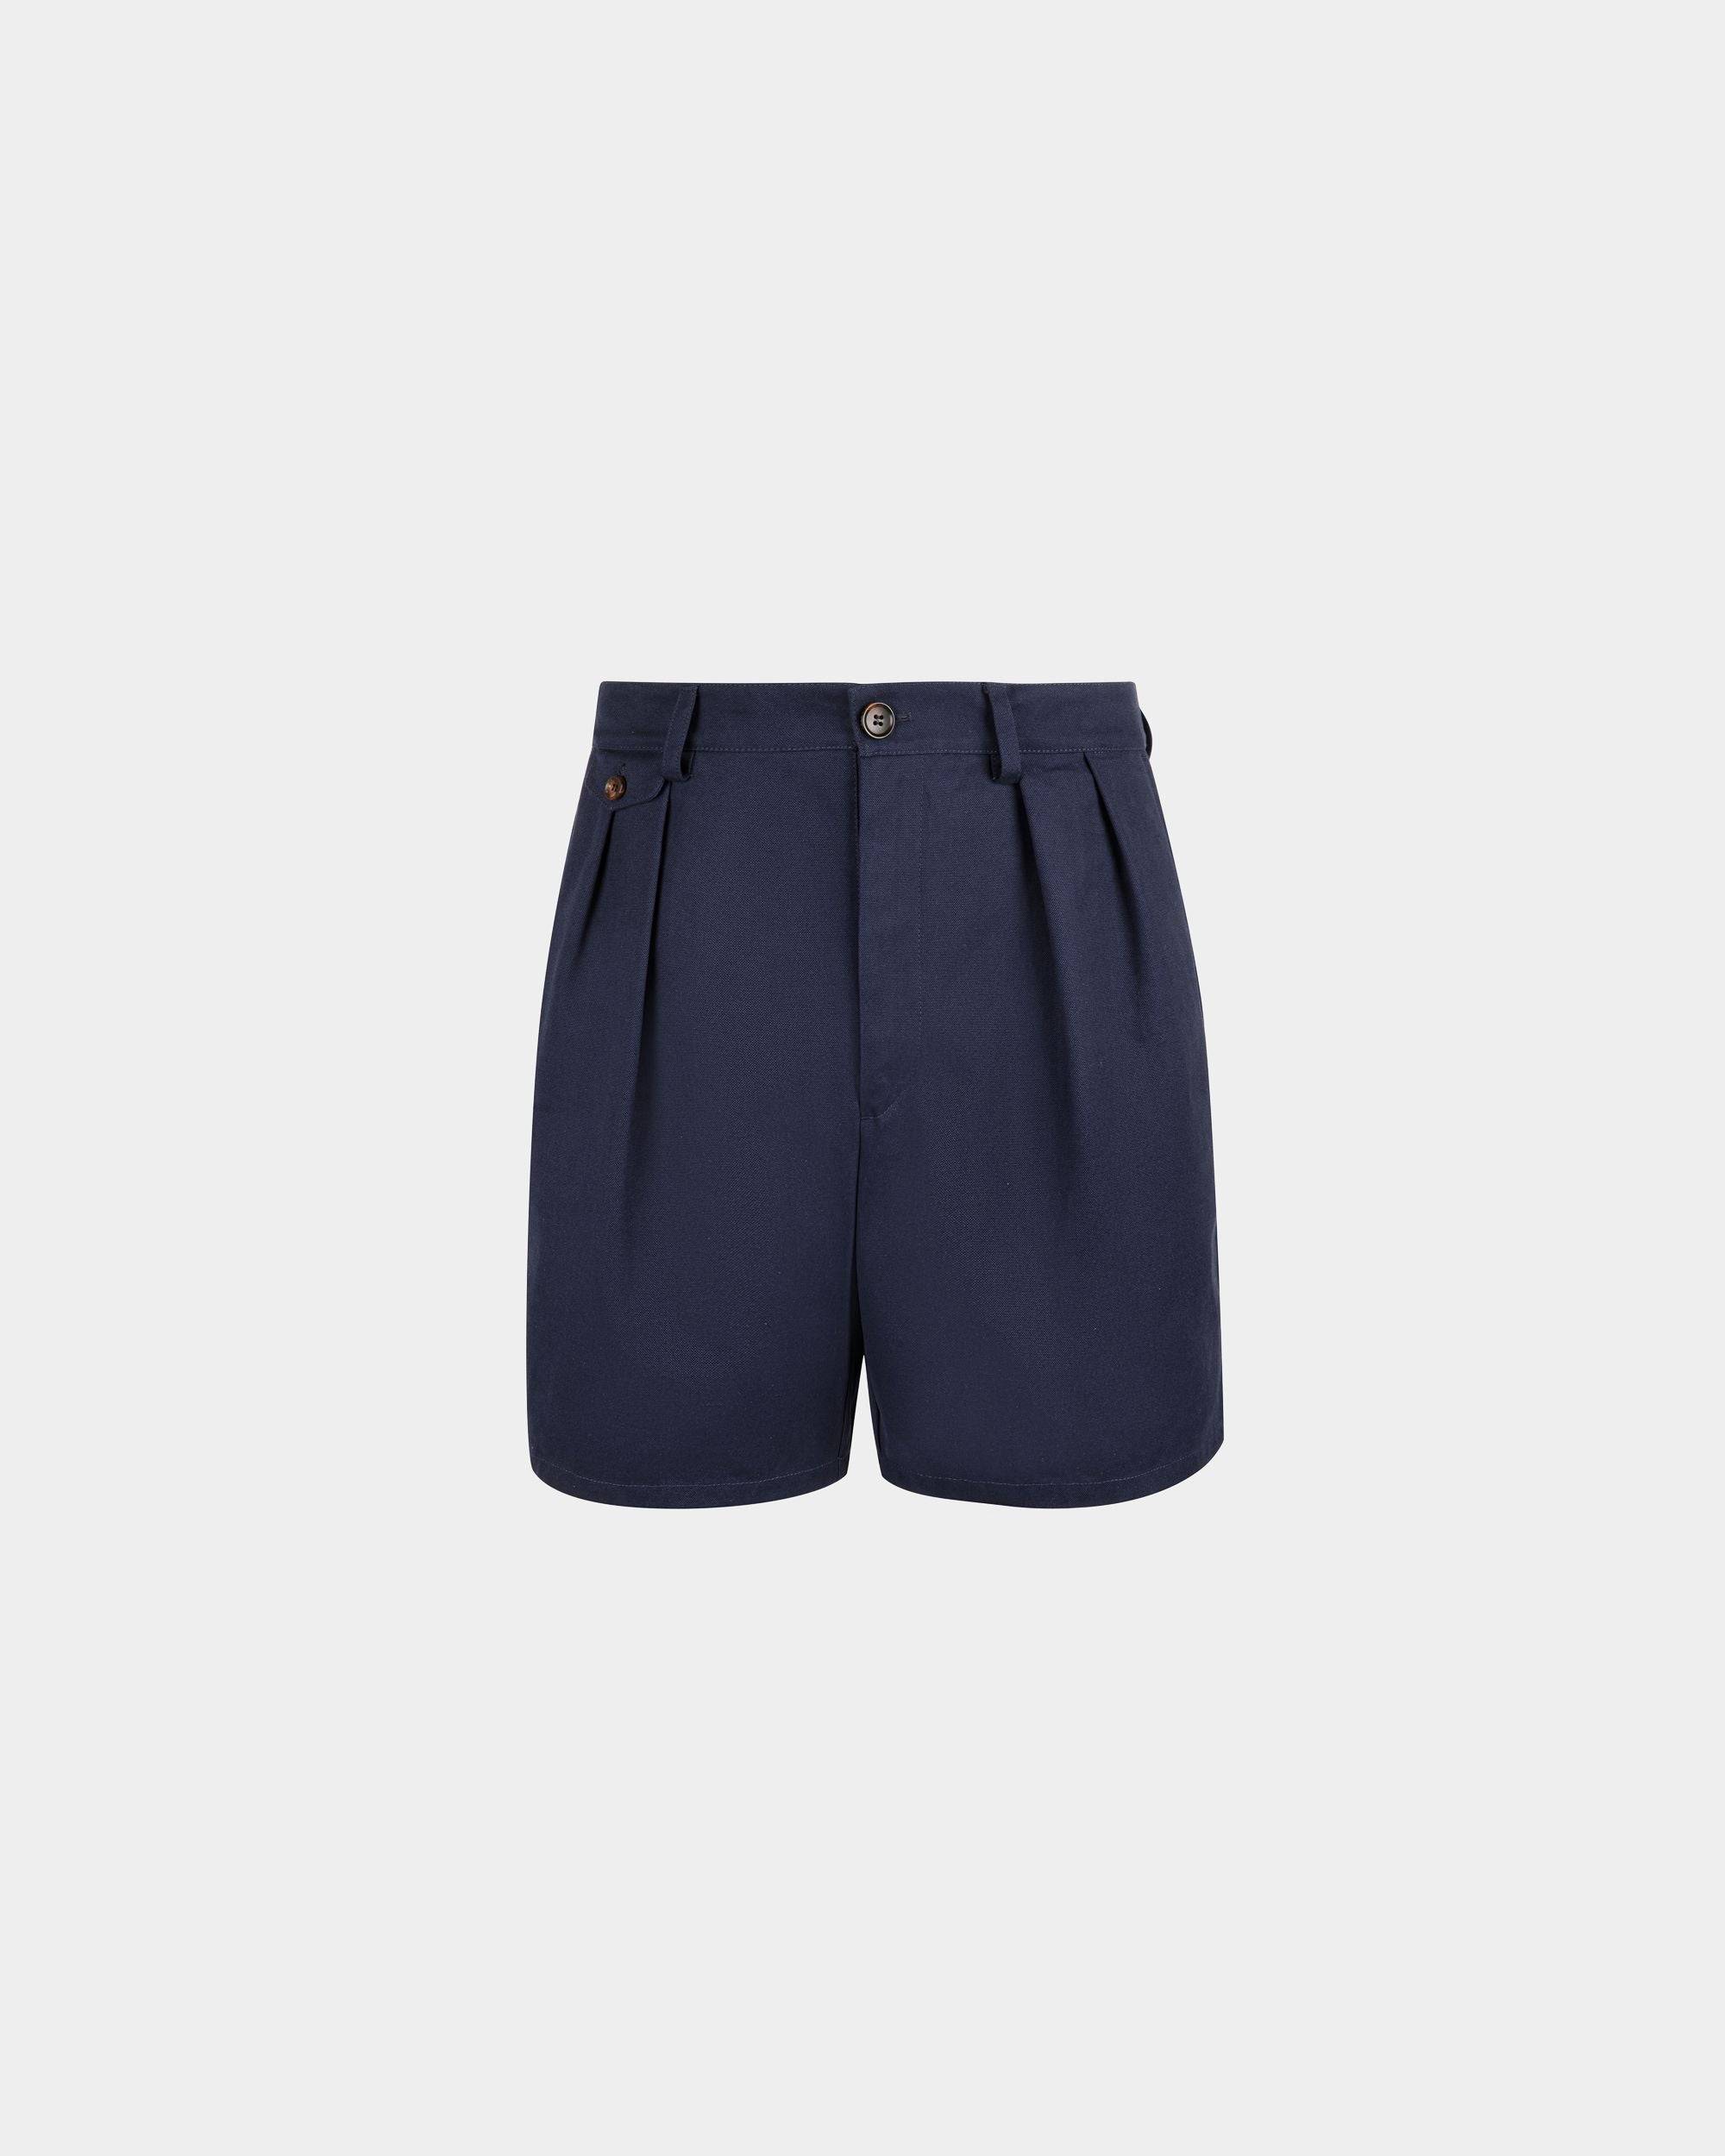 Men's Shorts in Navy Blue Cotton | Bally | Still Life Front